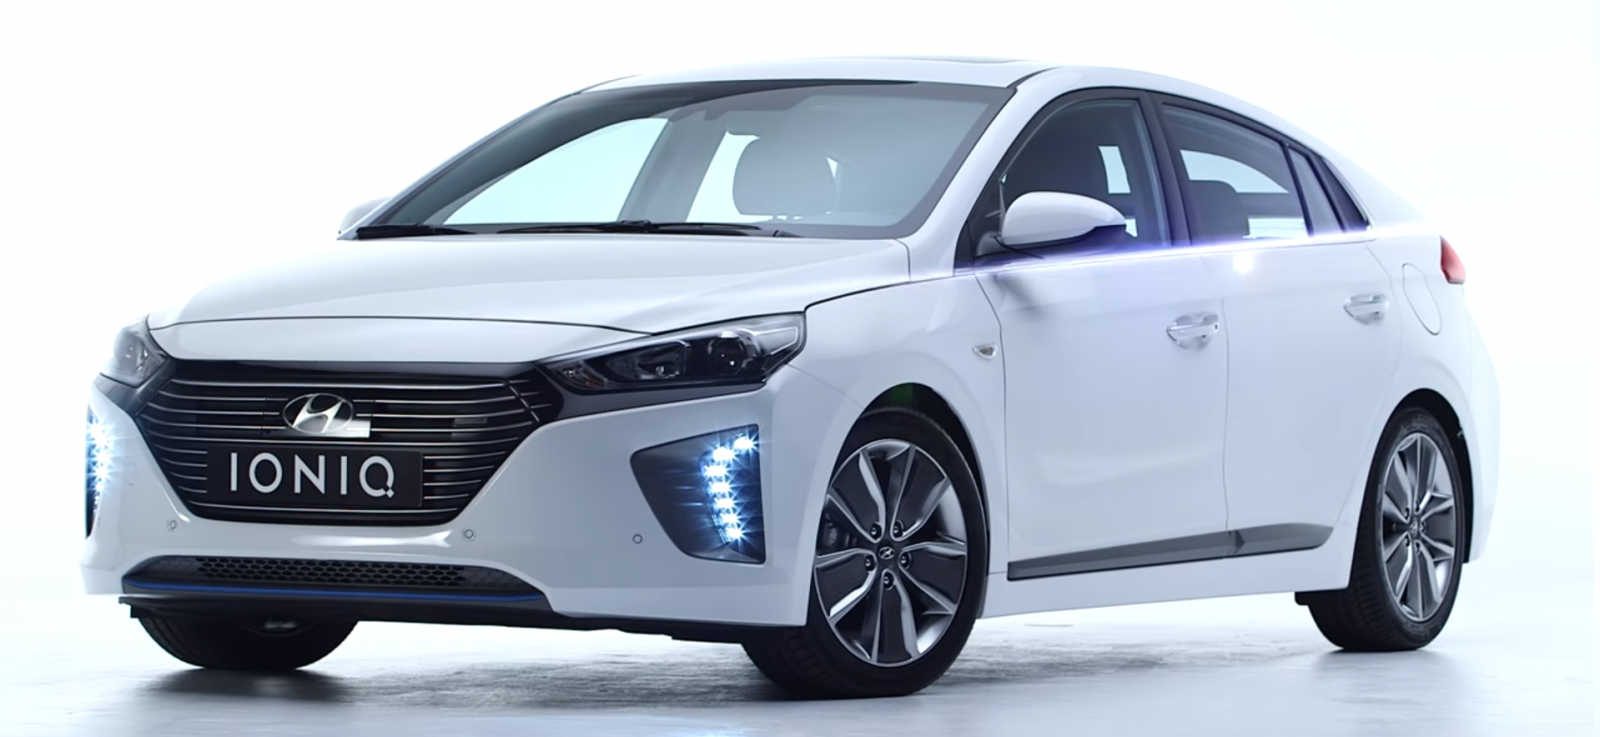 All-electric version of the Hyundai IONIQ